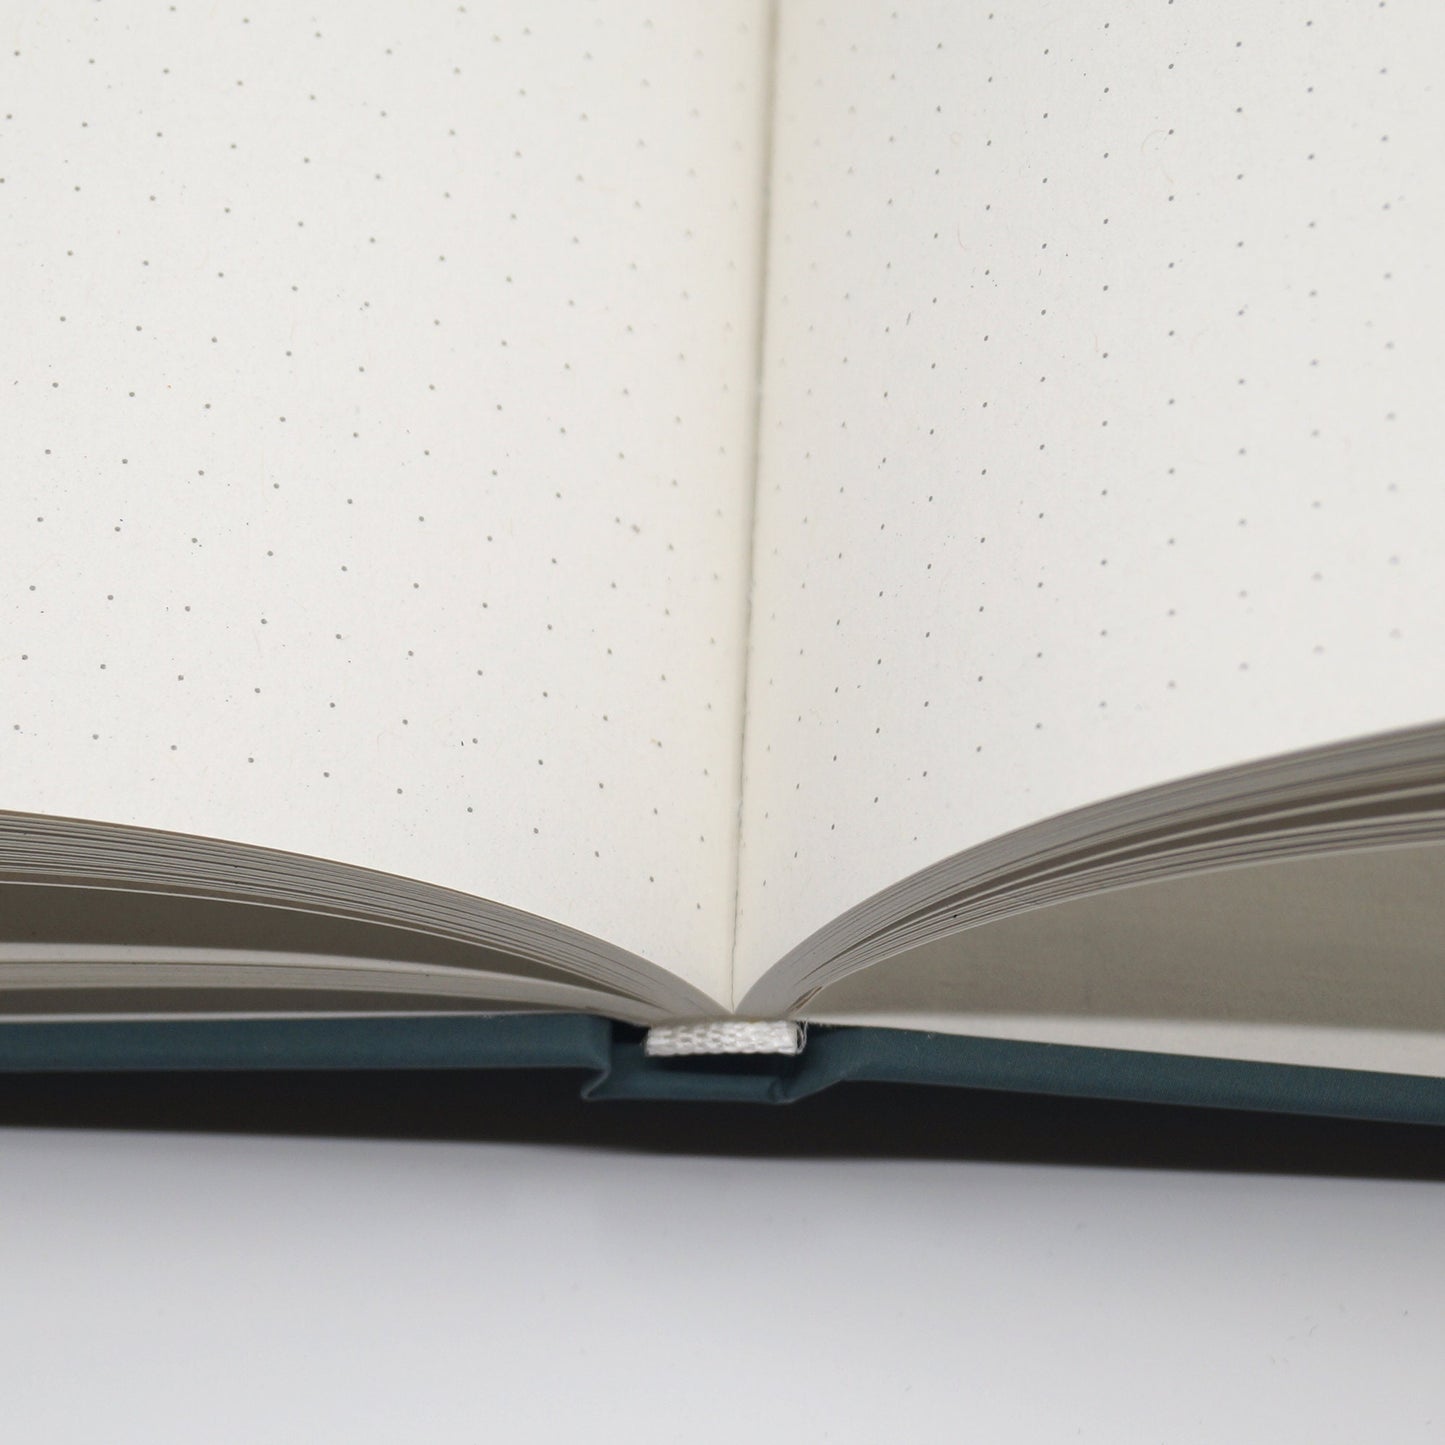 Notizbuch 'Seepferdchen' mit Punktraster - Journal mit Bullet Muster - Din A5 mit Lesezeichen